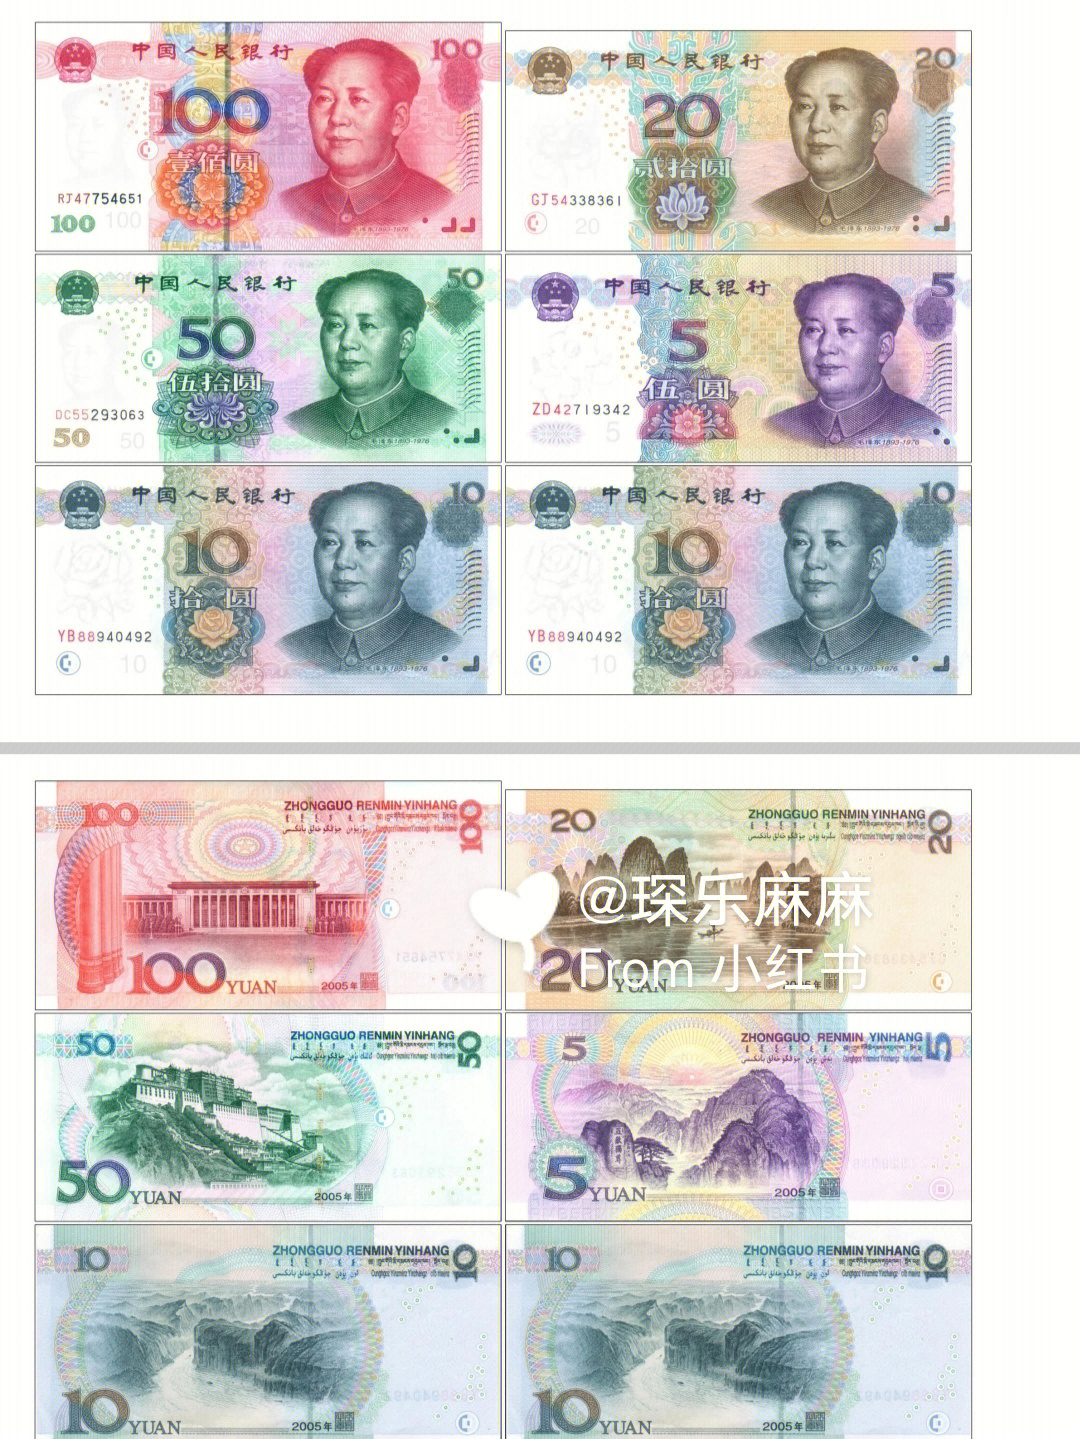 人民币图案详细解说图片